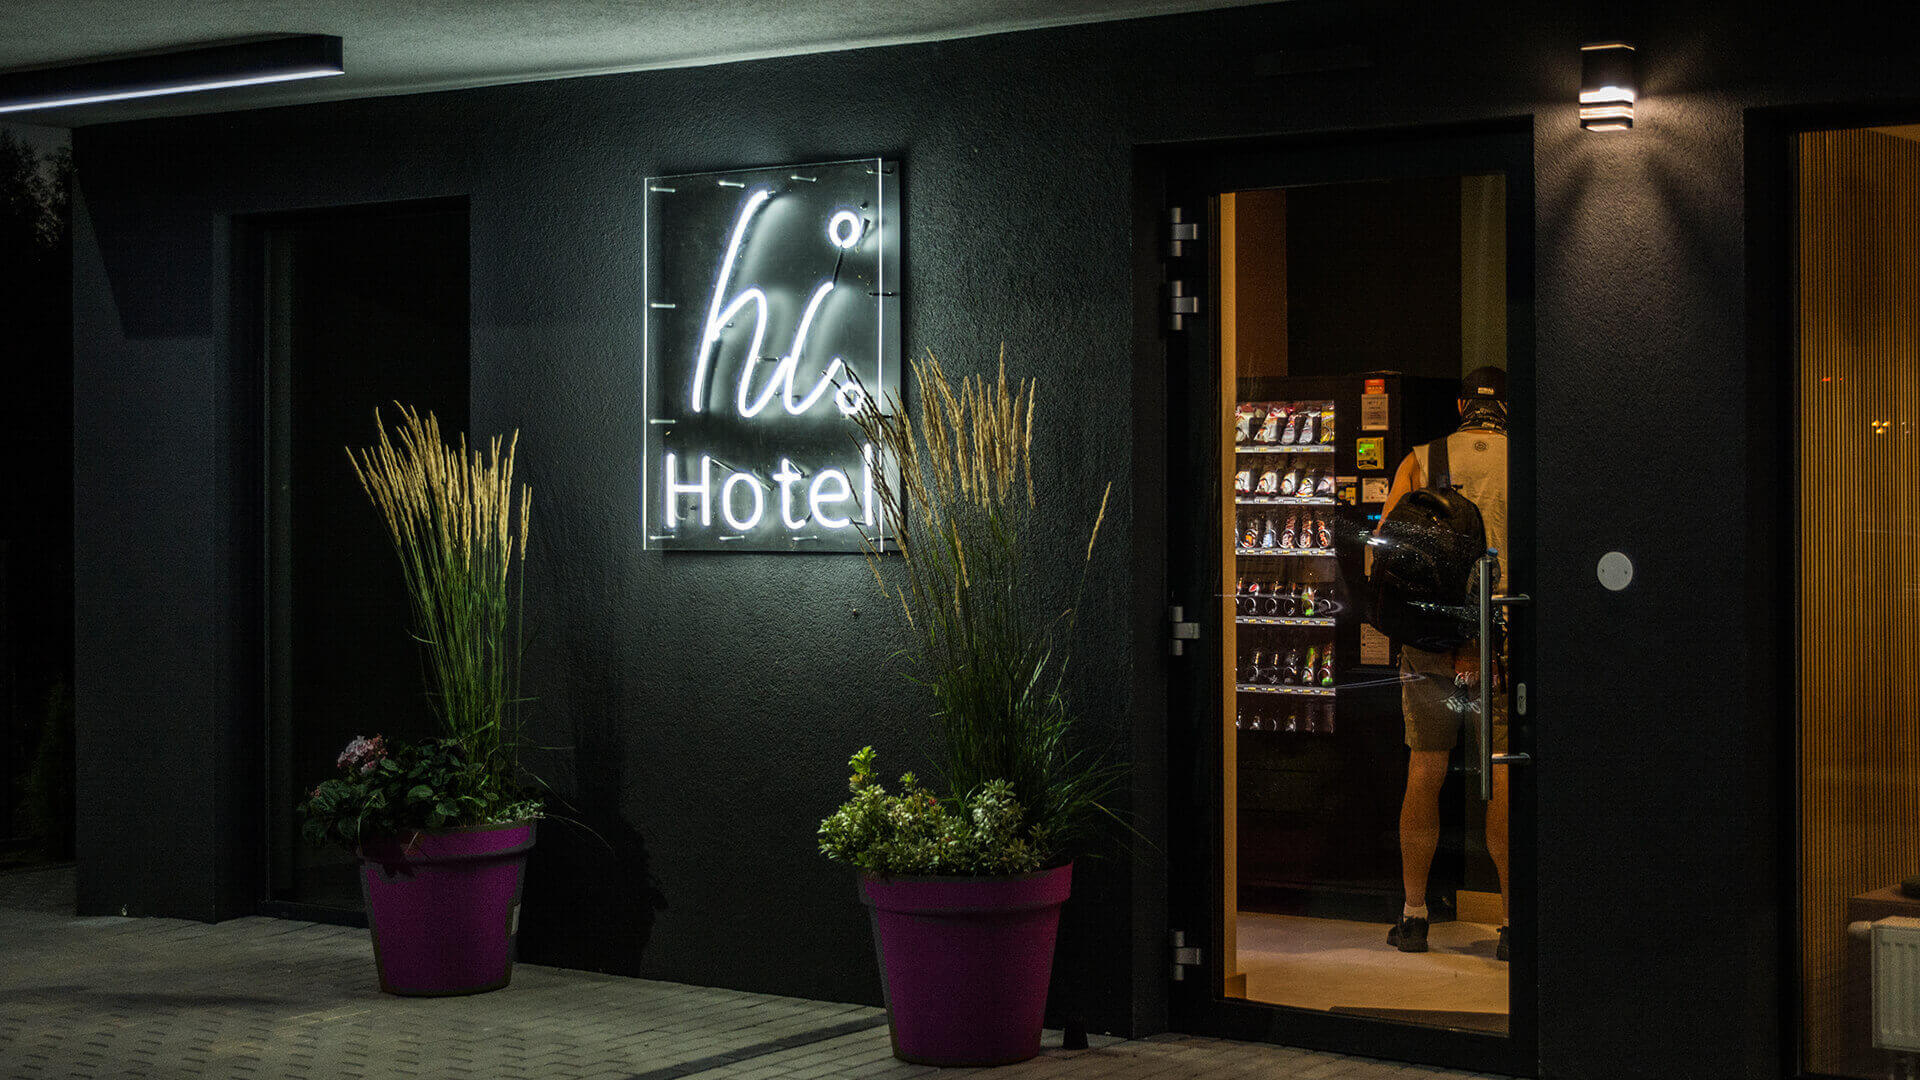 ciao hotel hihotel - hi-hotel-neon-sul-muro-neon-dietro-il-pannello-neon-sotto-luce-neon-all'ingresso-neon-all'altezza-neon-lines-neon-colore-bianco-logo-company-neon-sul-calcestruzzo-gdansk-lotnisko (48)